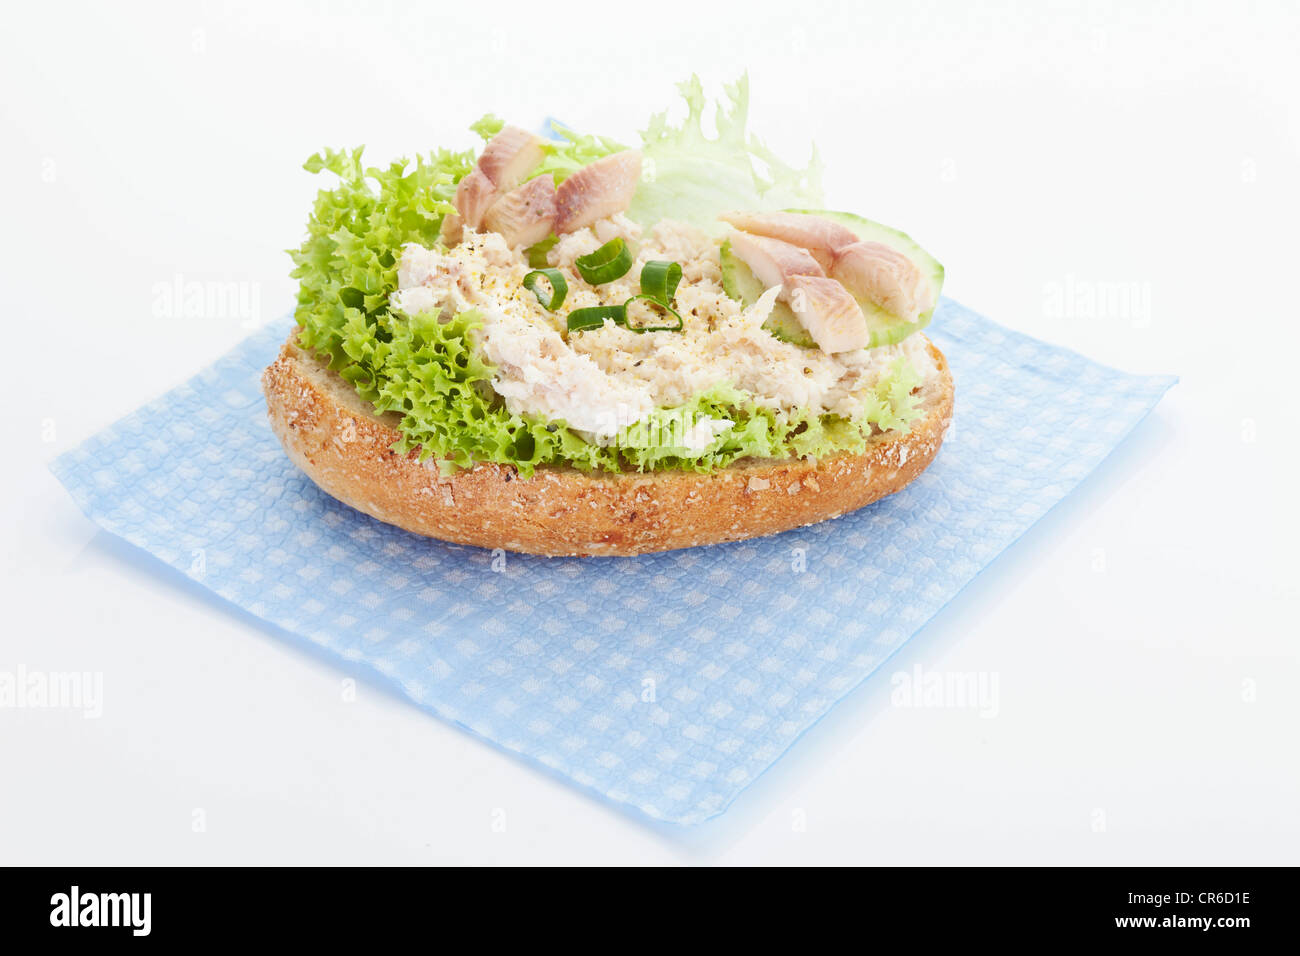 Filetto di trota tartaro sandwich sul tovagliolo, close up Foto Stock